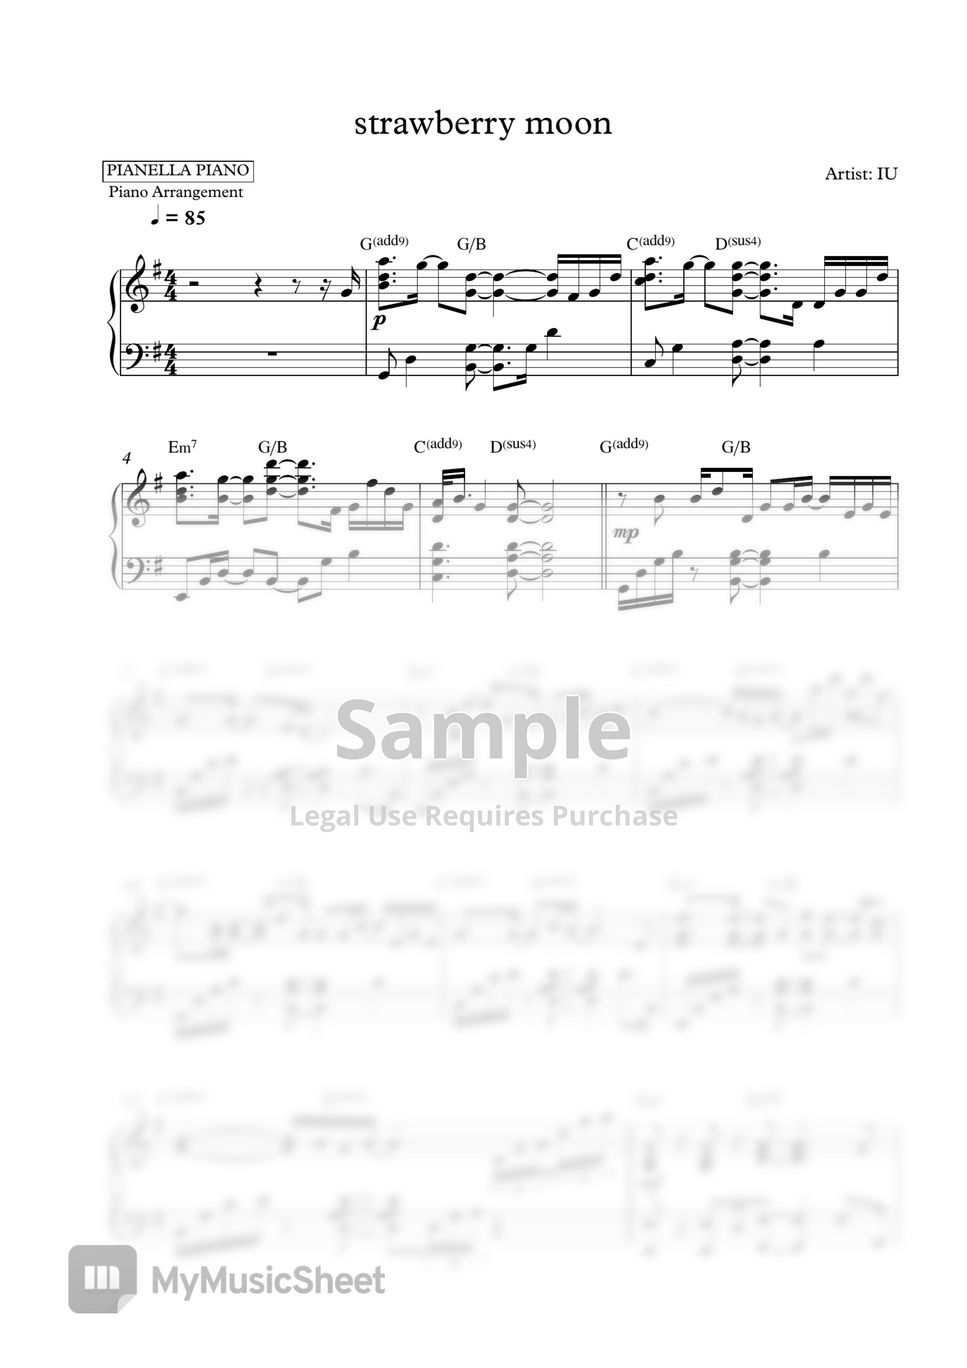 IU - strawberry moon - 2 PDF (Original Key Gb & Easier Key G) by Pianella Piano